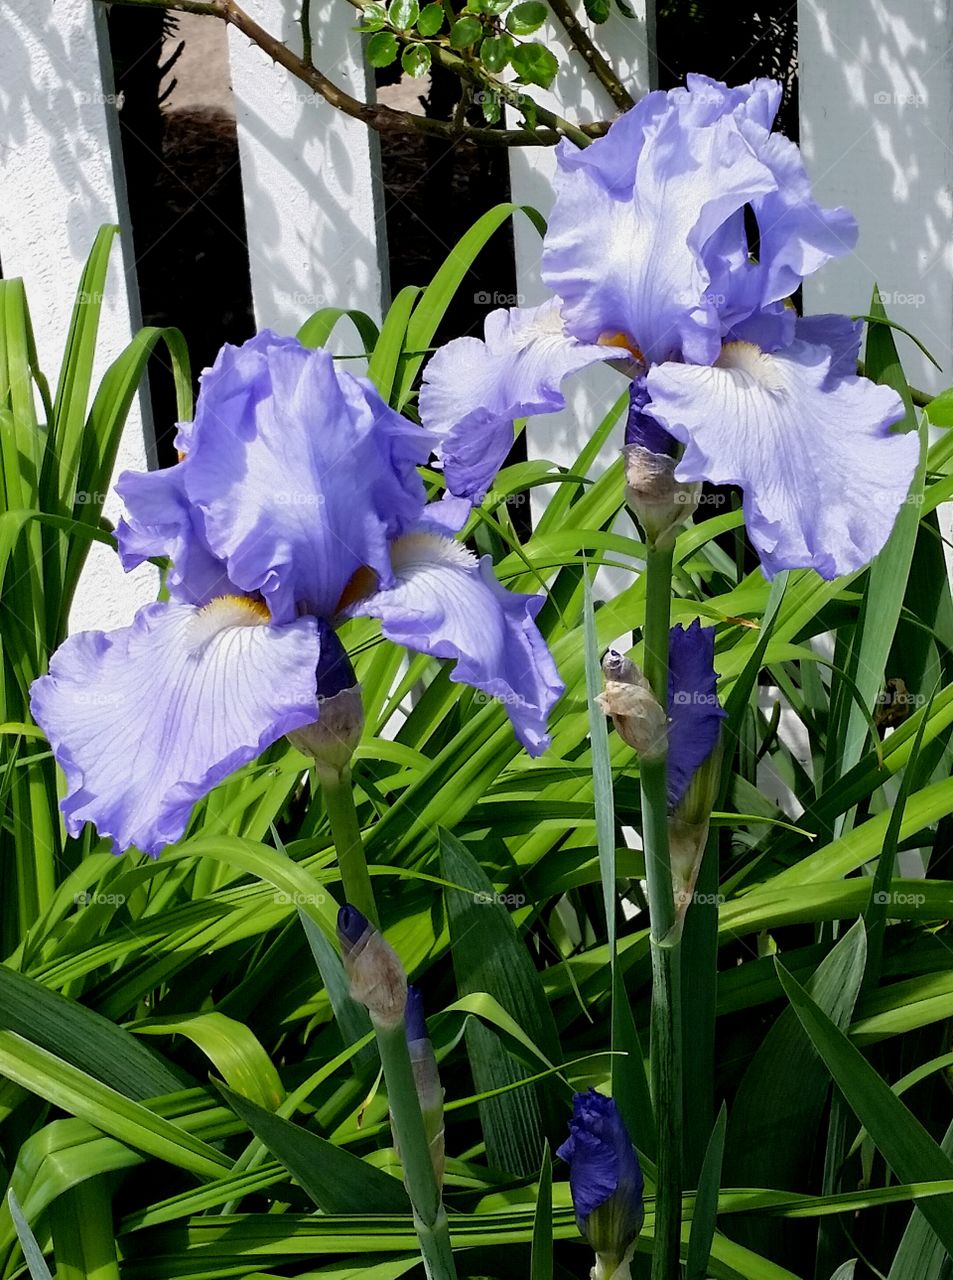 A Pair of Irises